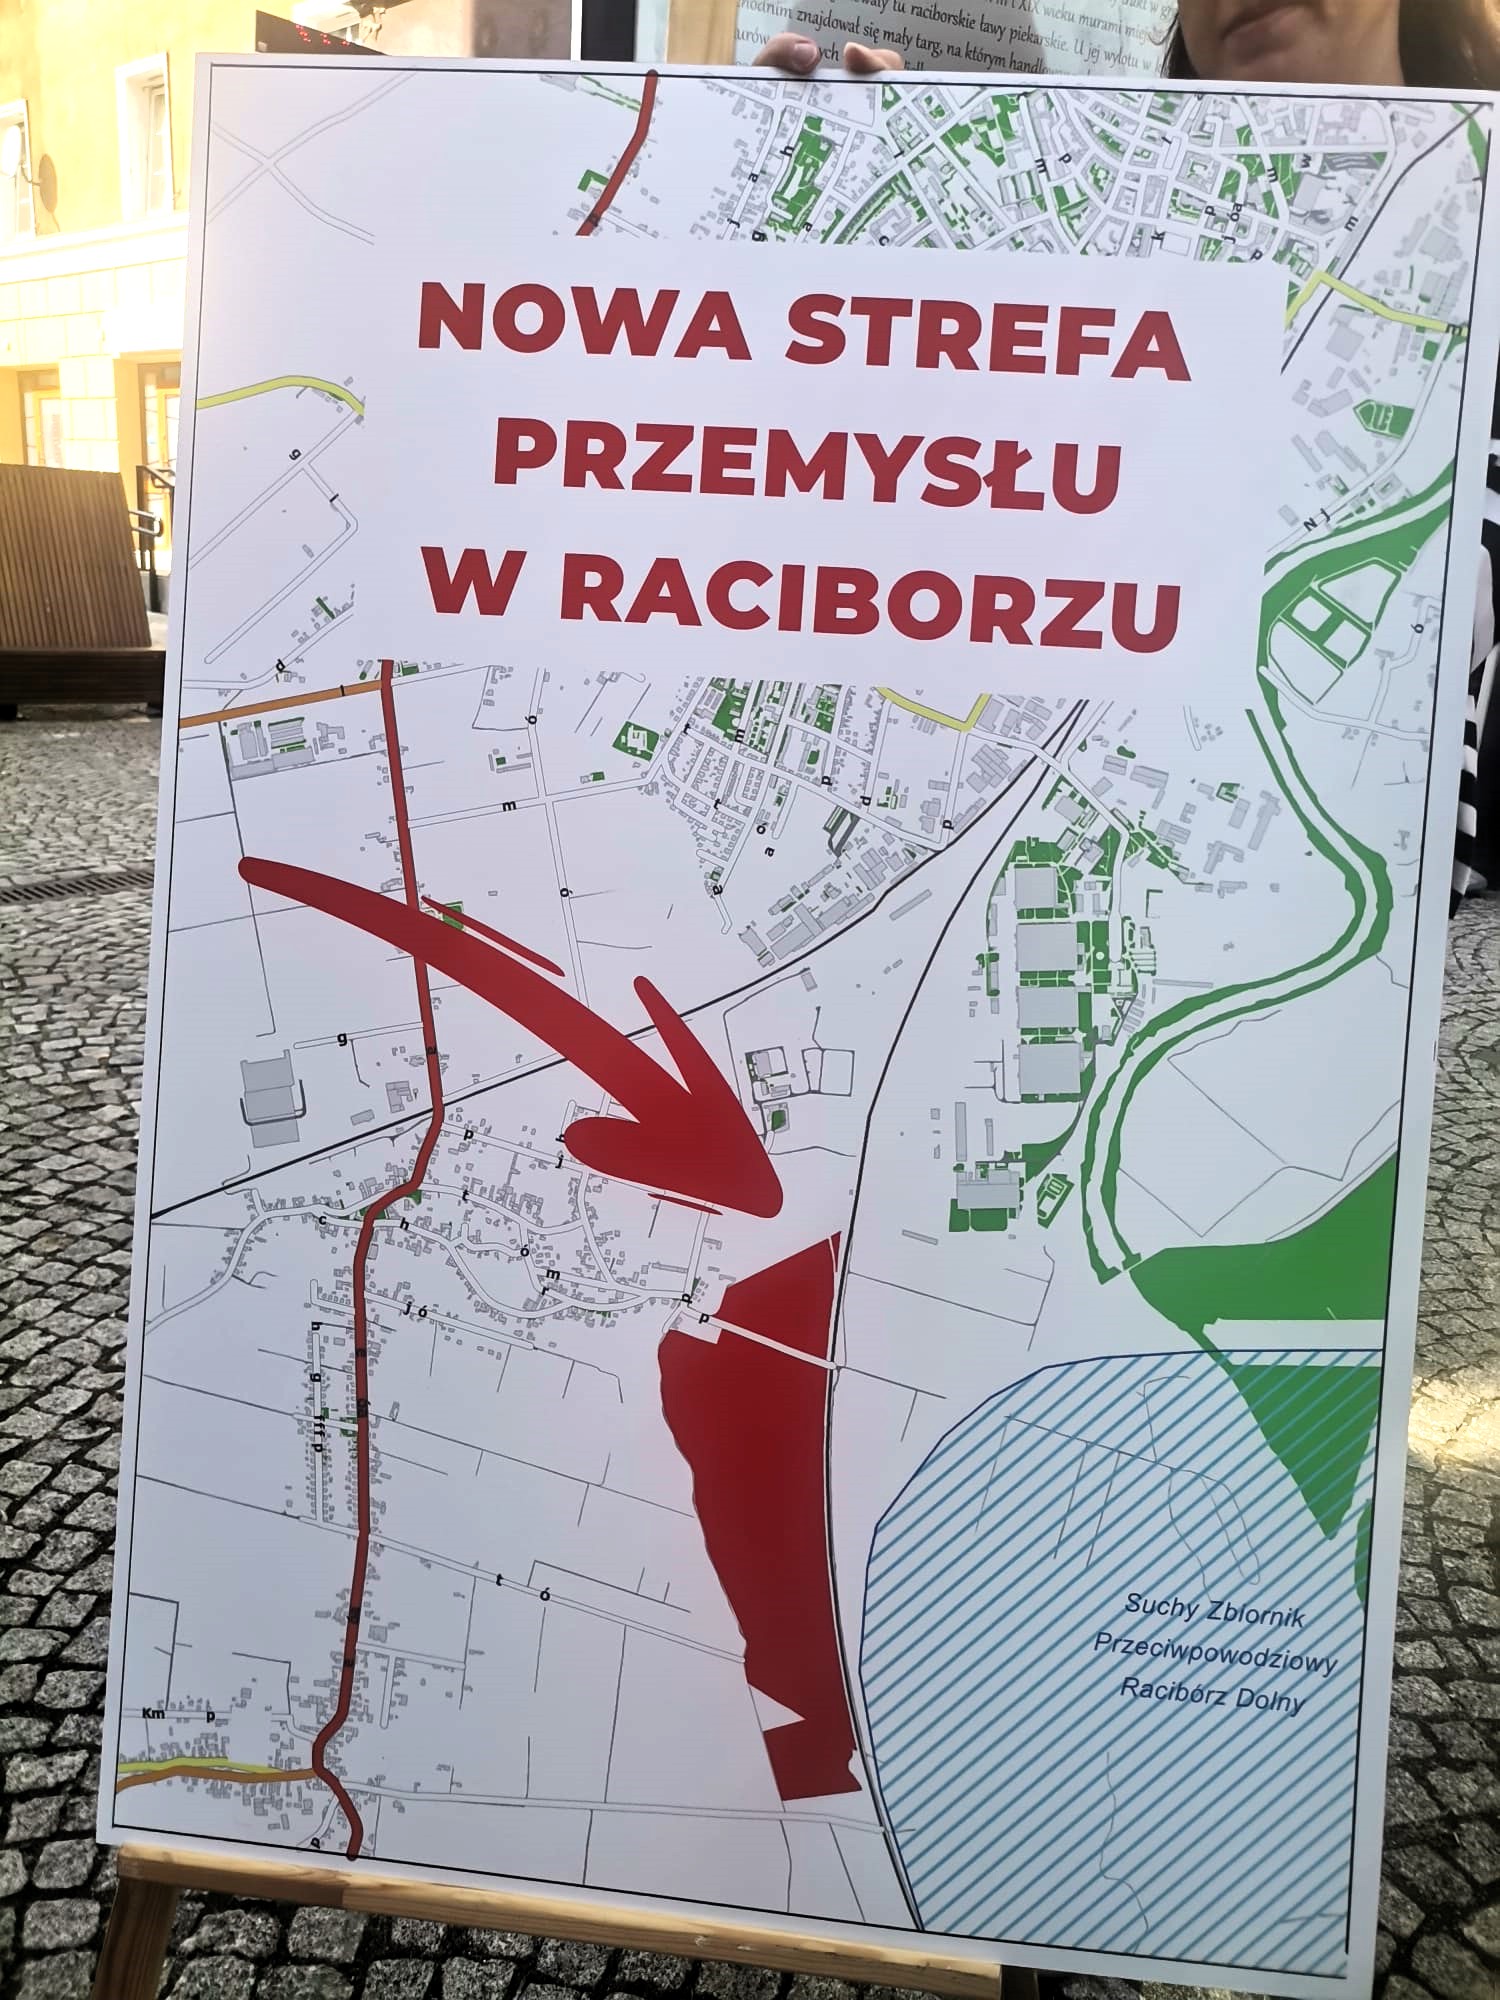 Mapka z zaznaczonym terenem nowej strefy ekonomicznej w Raciborzu.